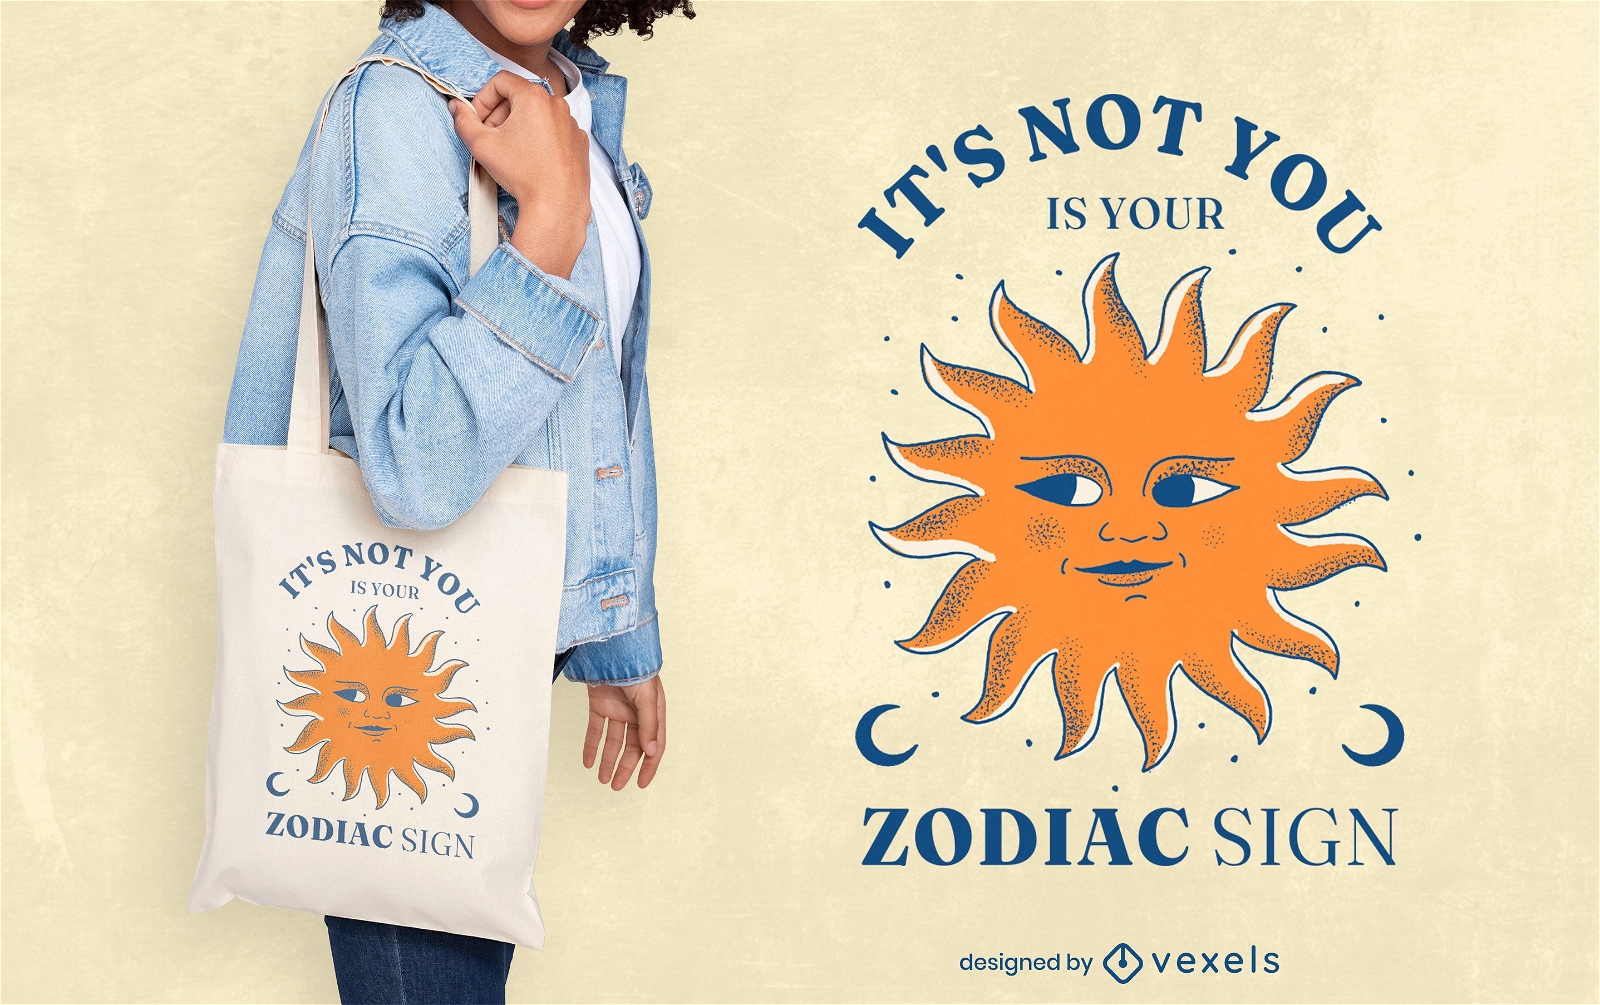 Zodiac sign funny quote tote bag design